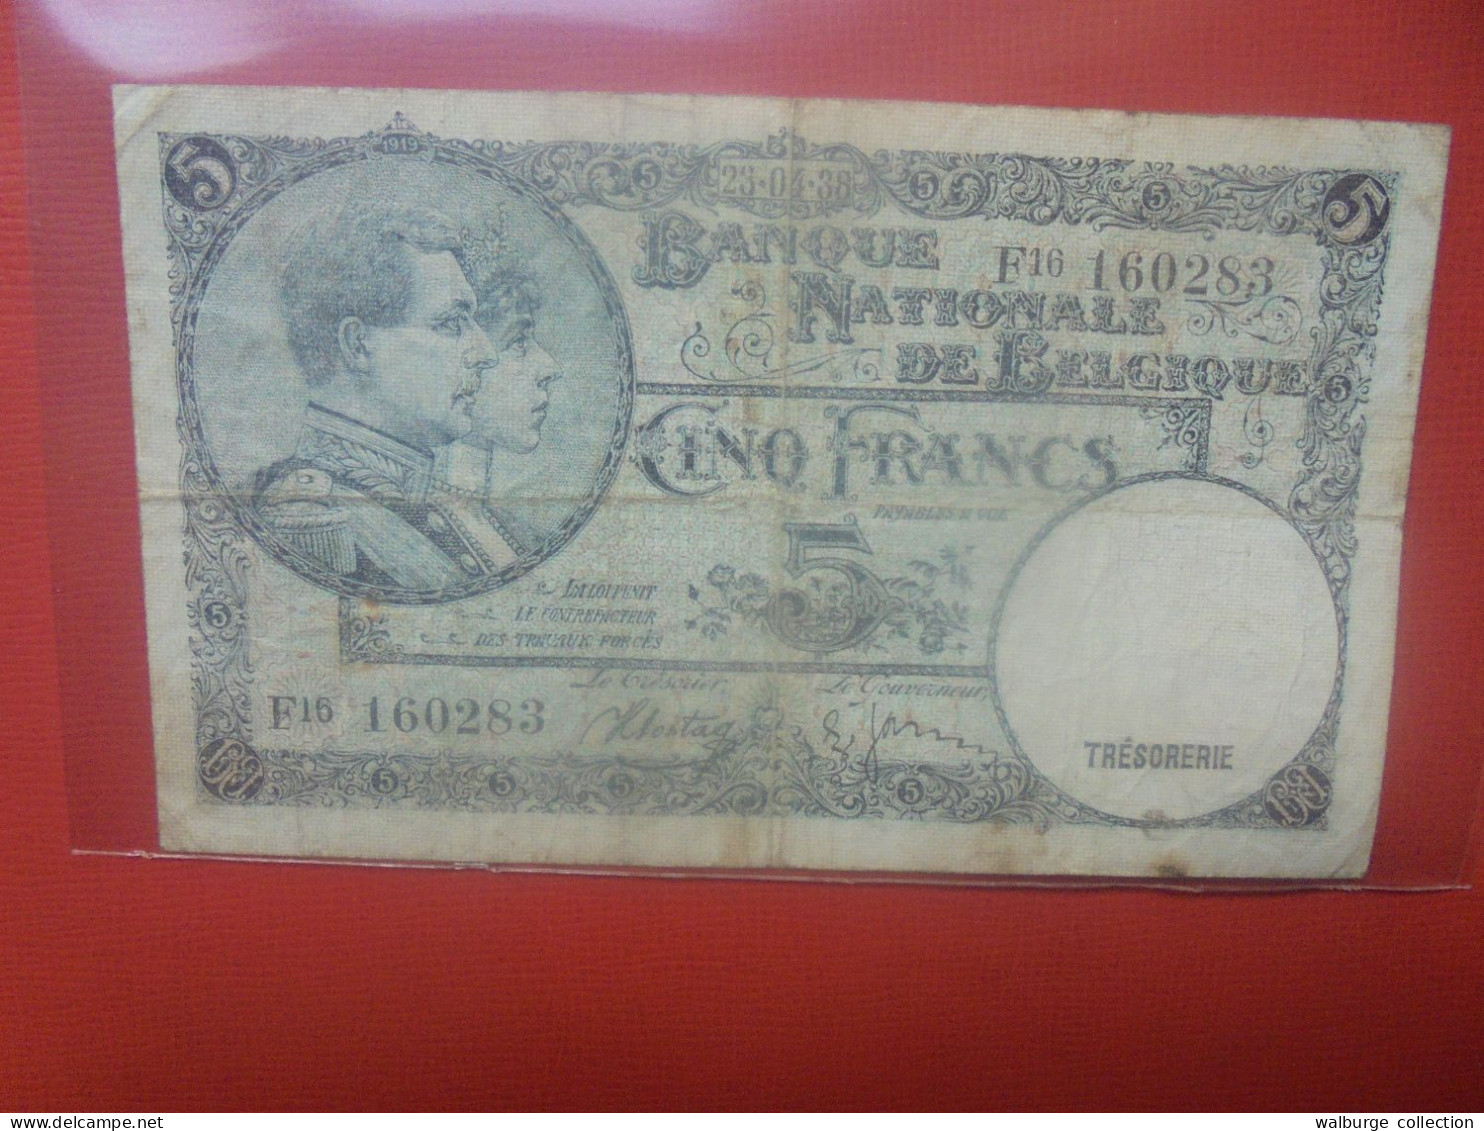 BELGIQUE 5 Francs 1938 Circuler (B.18) - 5 Francos